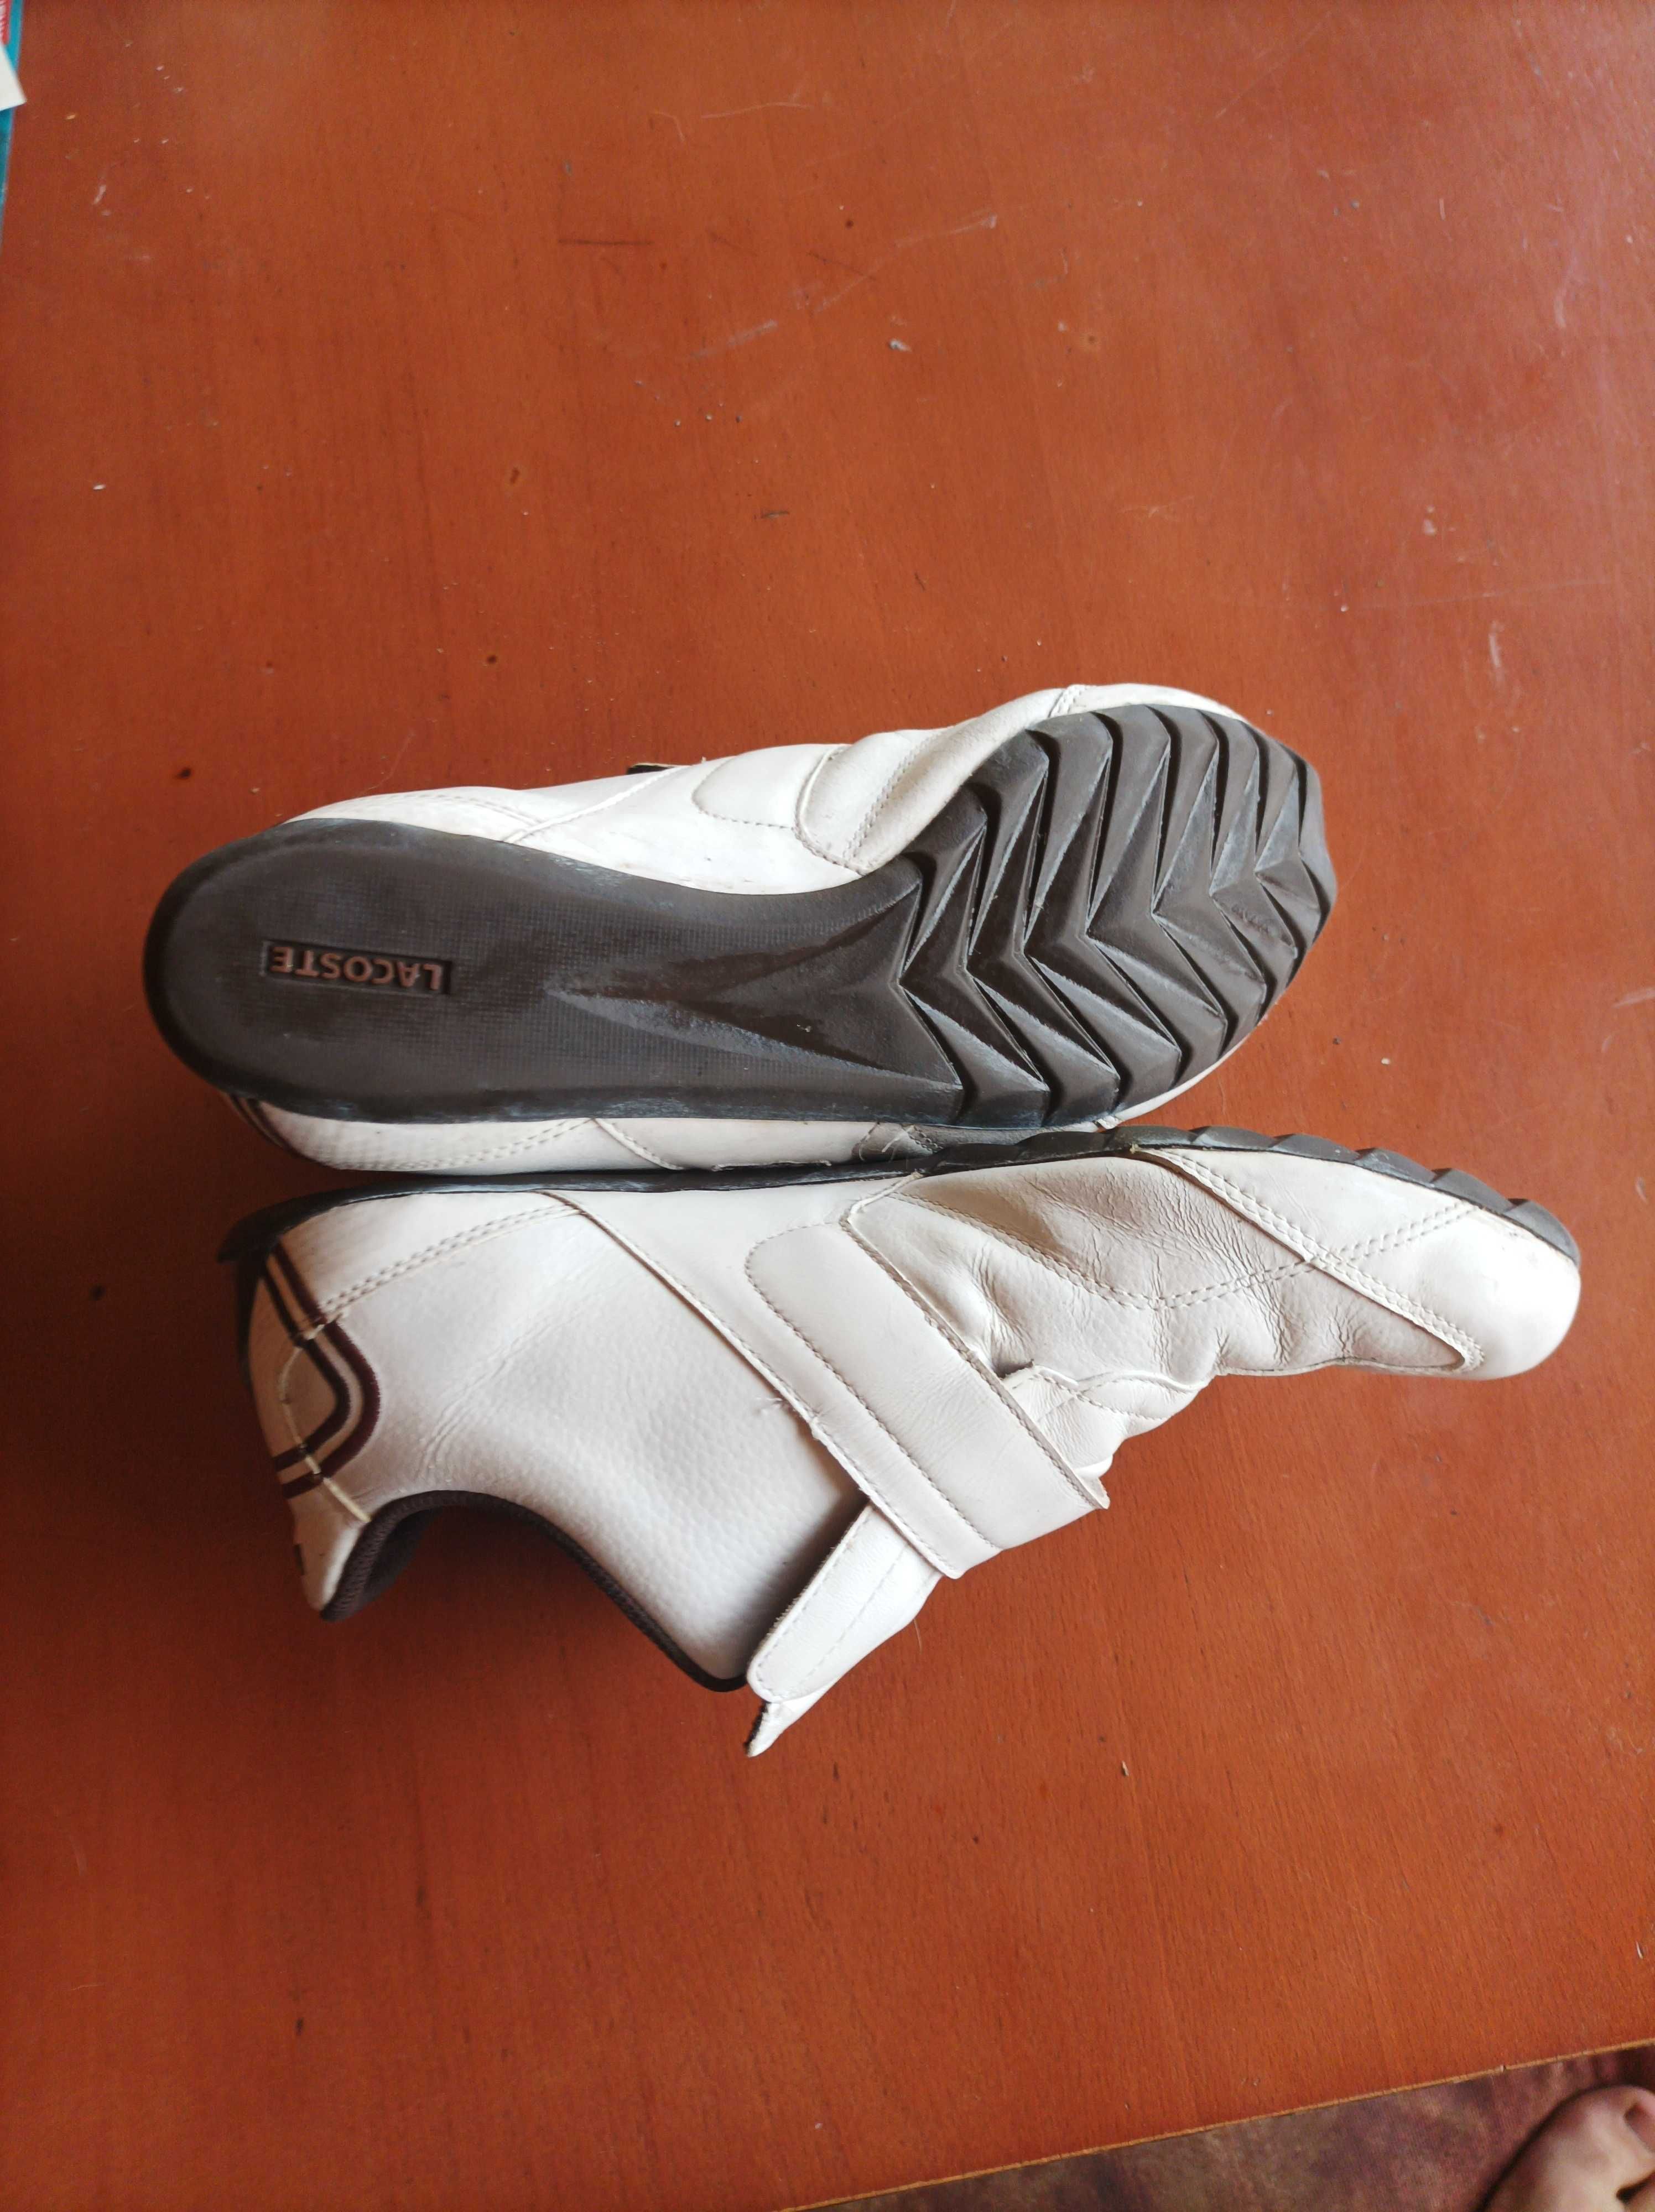 Мъжки обувки Lacoste